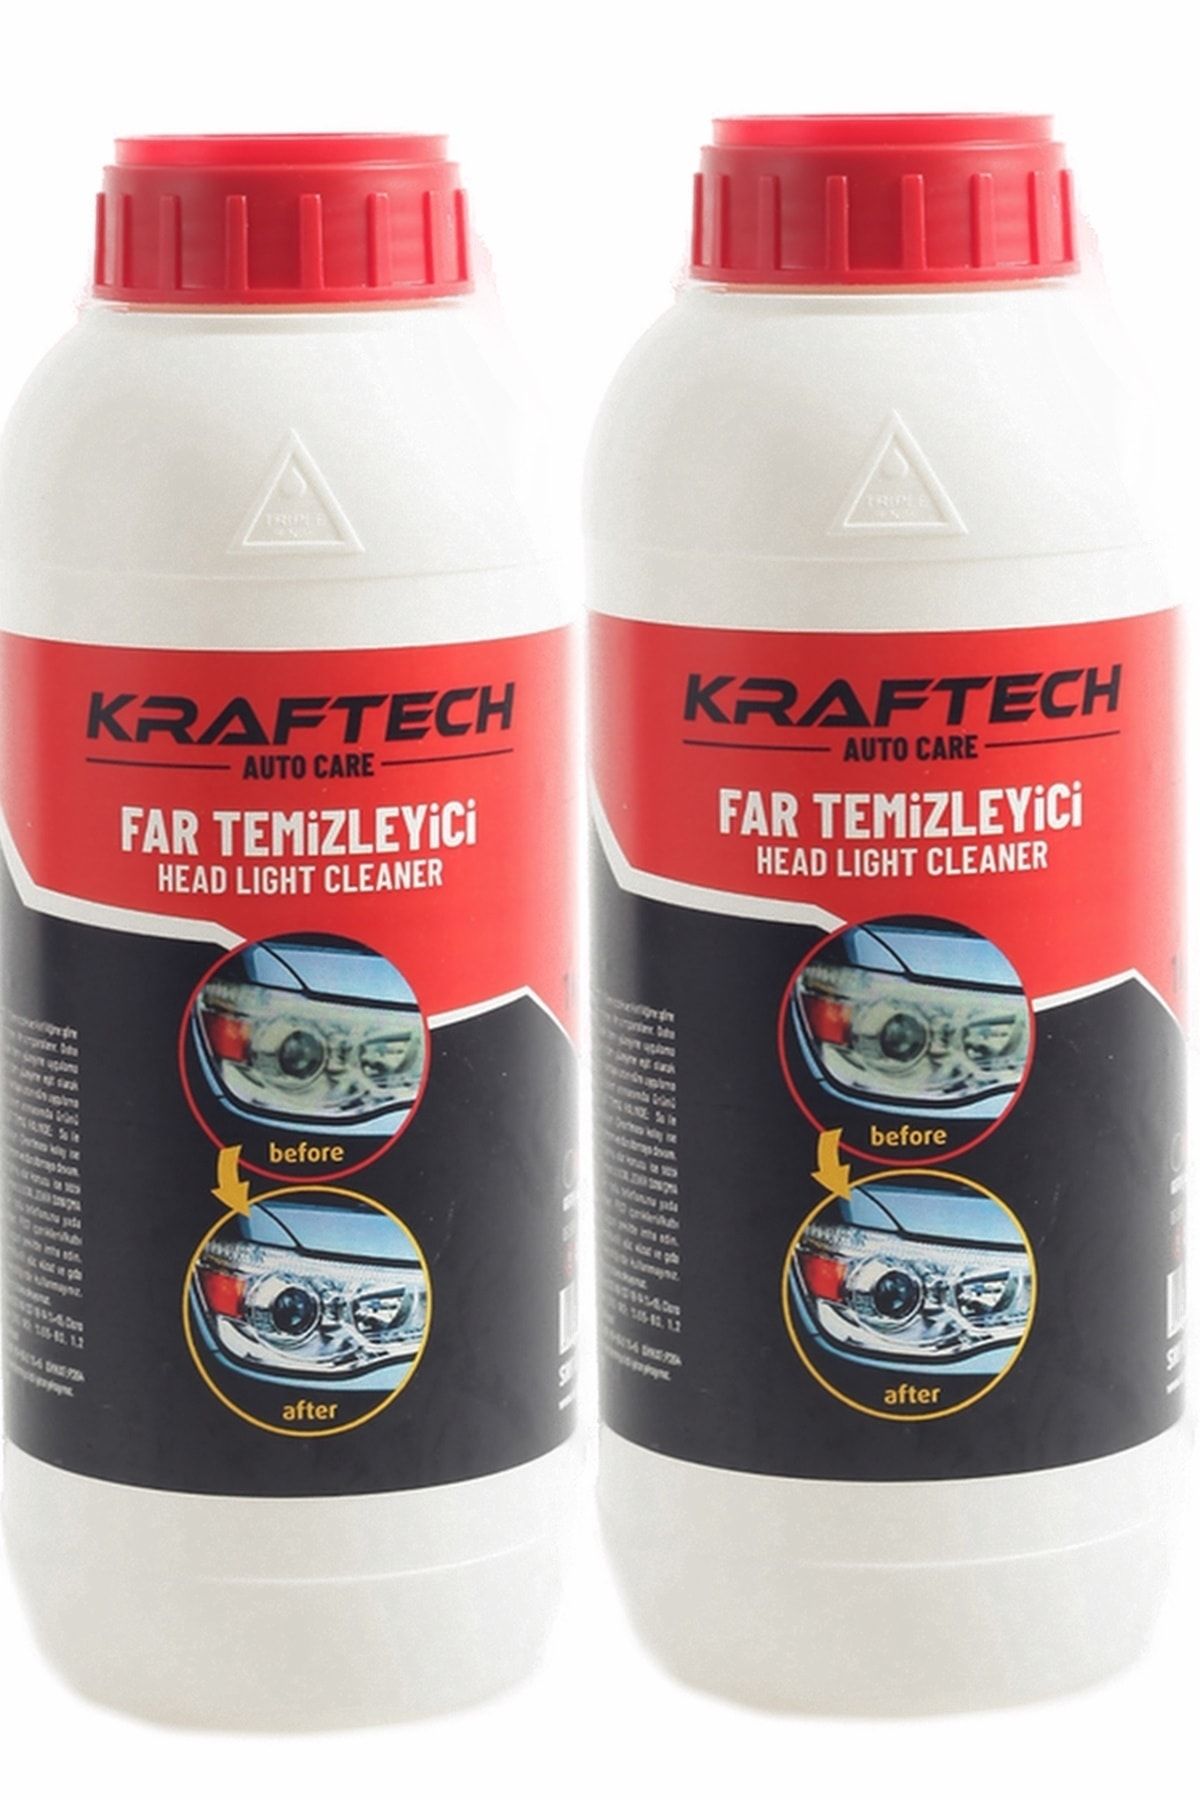 Kraftech Yeni Nesil Araba Far Temizleme Sıvısı Far Temizleme Solüsyonu Kloroform 2 Kg